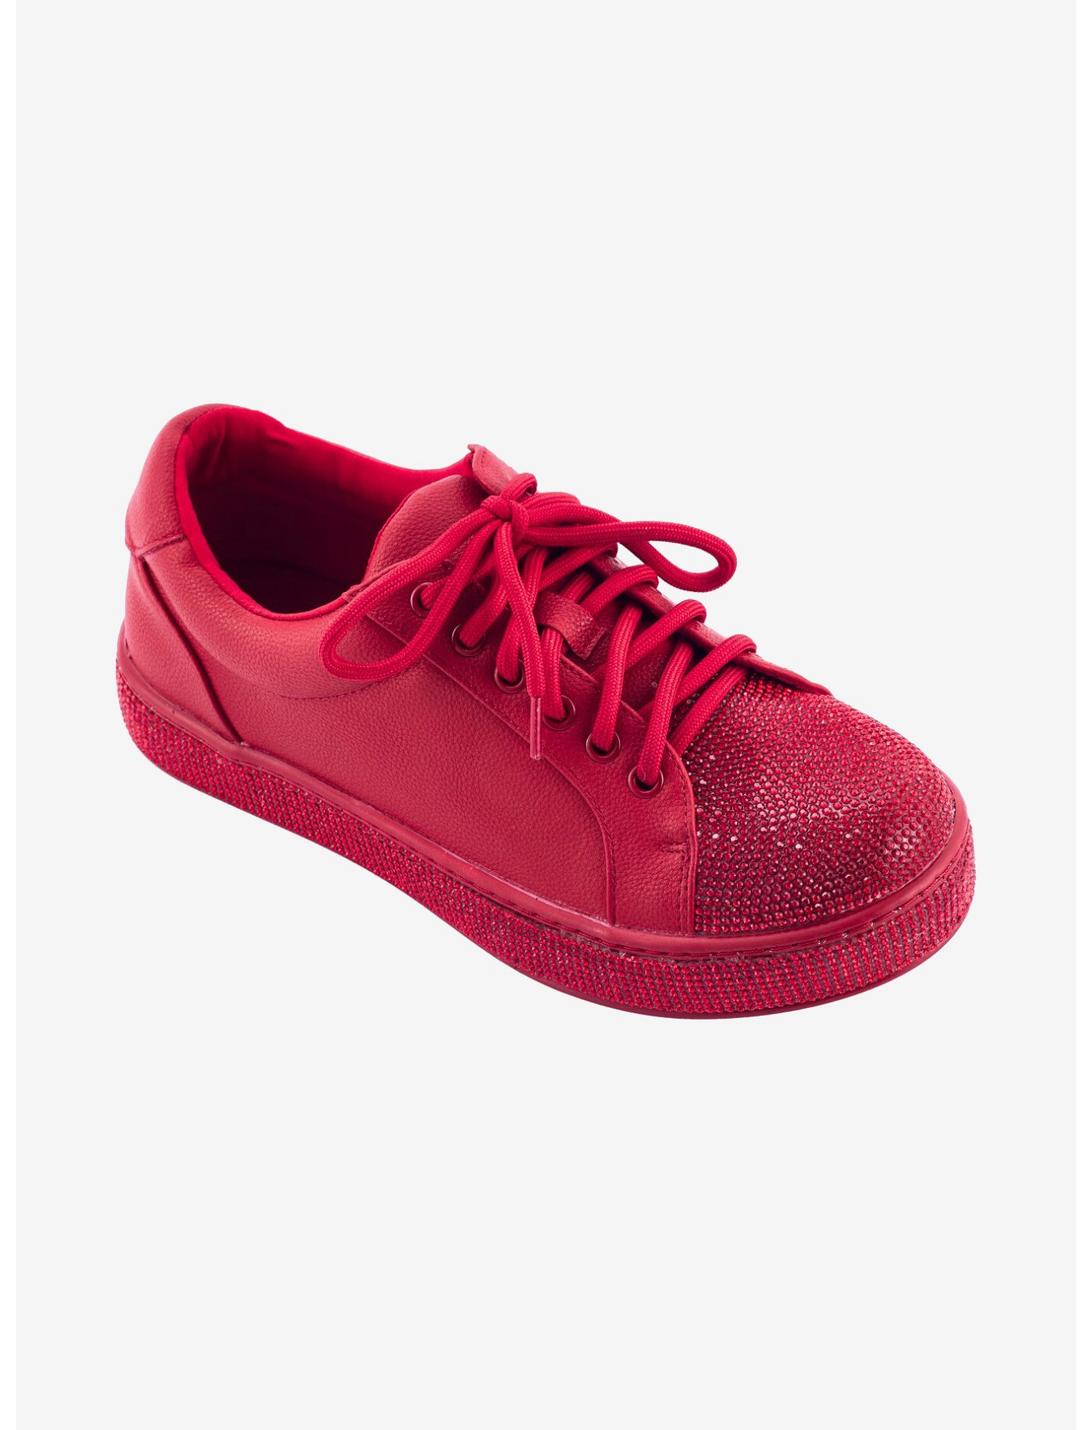 Legend Red Platform Sneaker, RED, hi-res